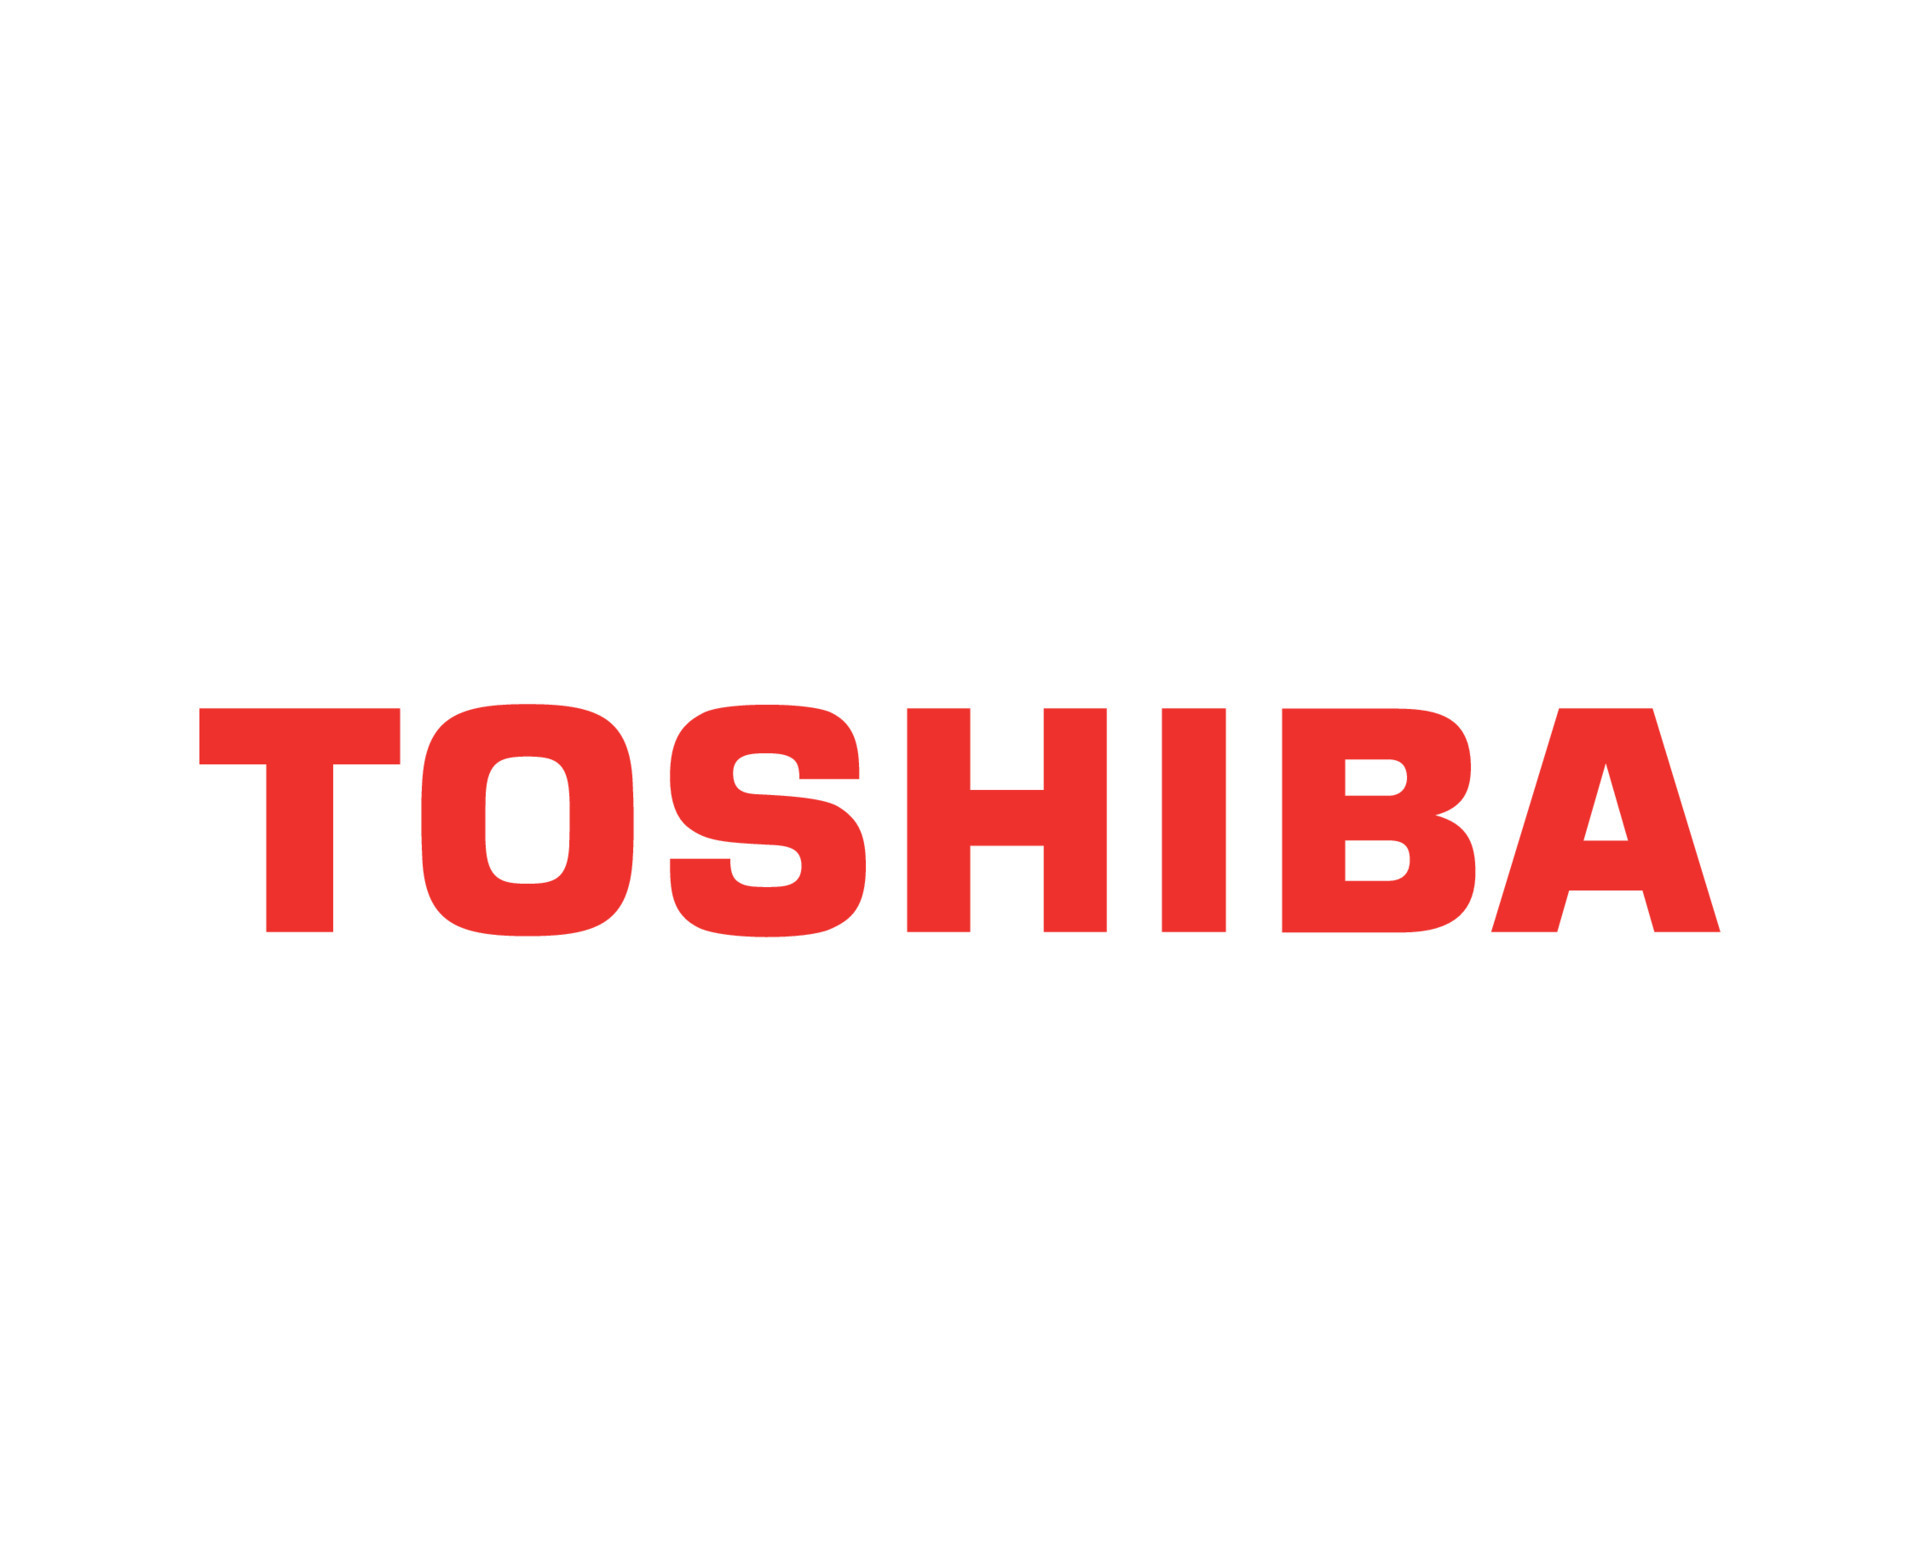 توشیبا - TOSHIBA